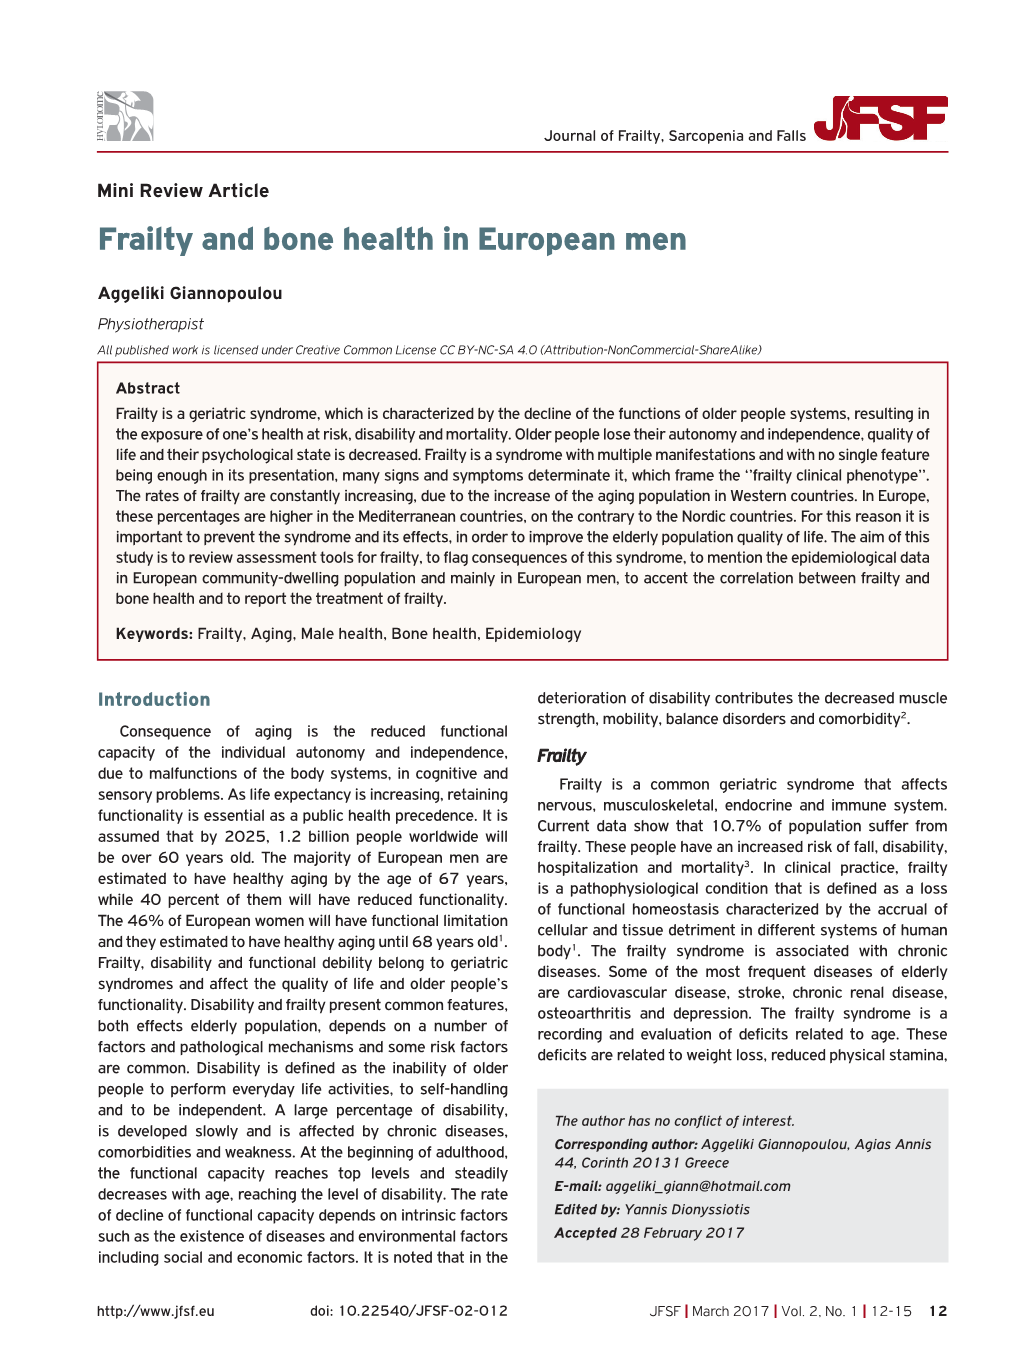 Frailty and Bone Health in European Men